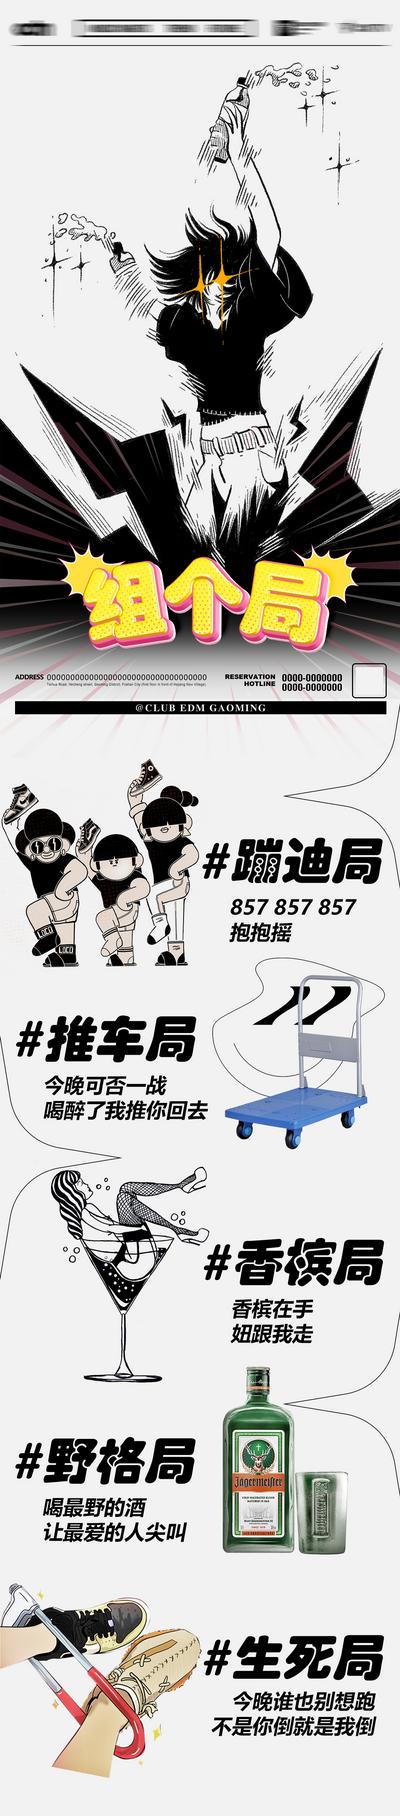 南门网 海报 长图 酒吧 夜店 组局 蹦迪 推车 香槟 漫画